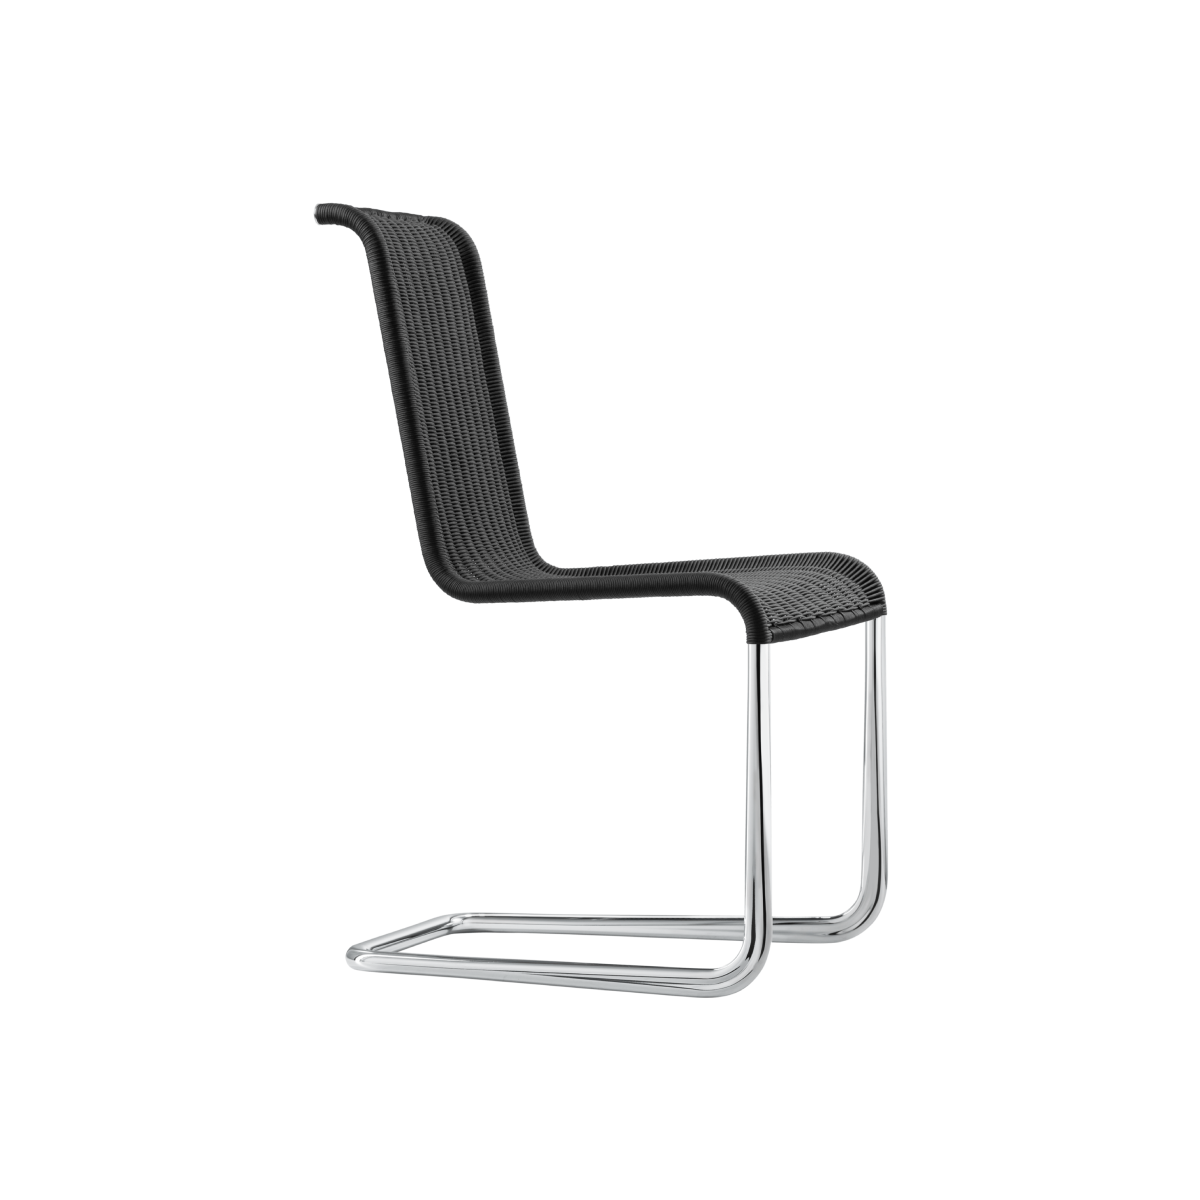 TECTA B20 Cantilever Chair Black